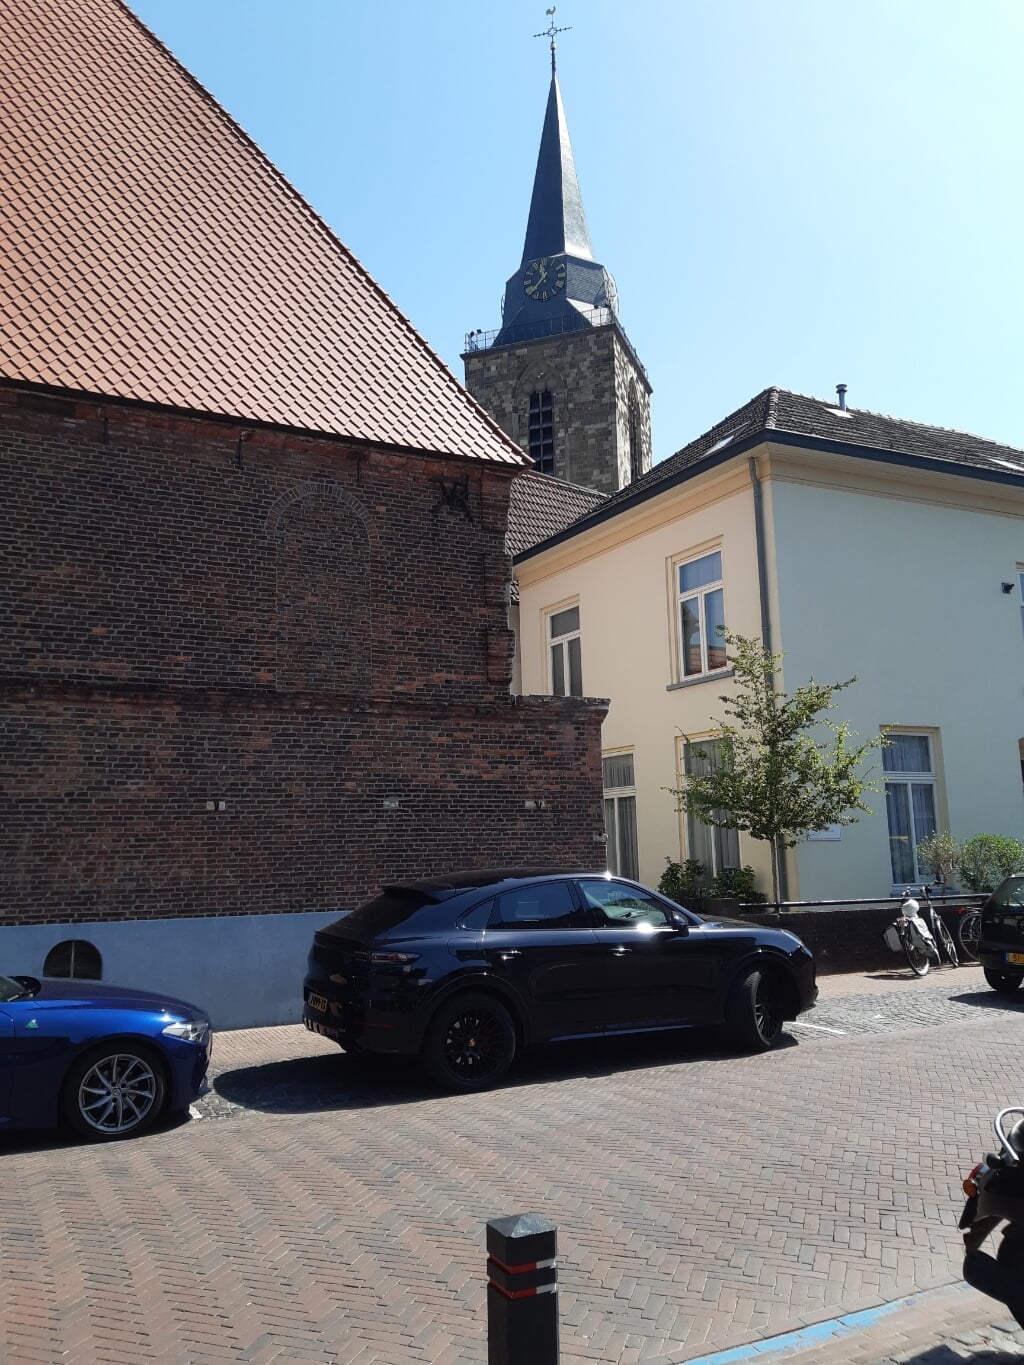 Doopsgezinde Kerk en toren Jacobskerk. Twee deelnemende locaties. Foto: PR